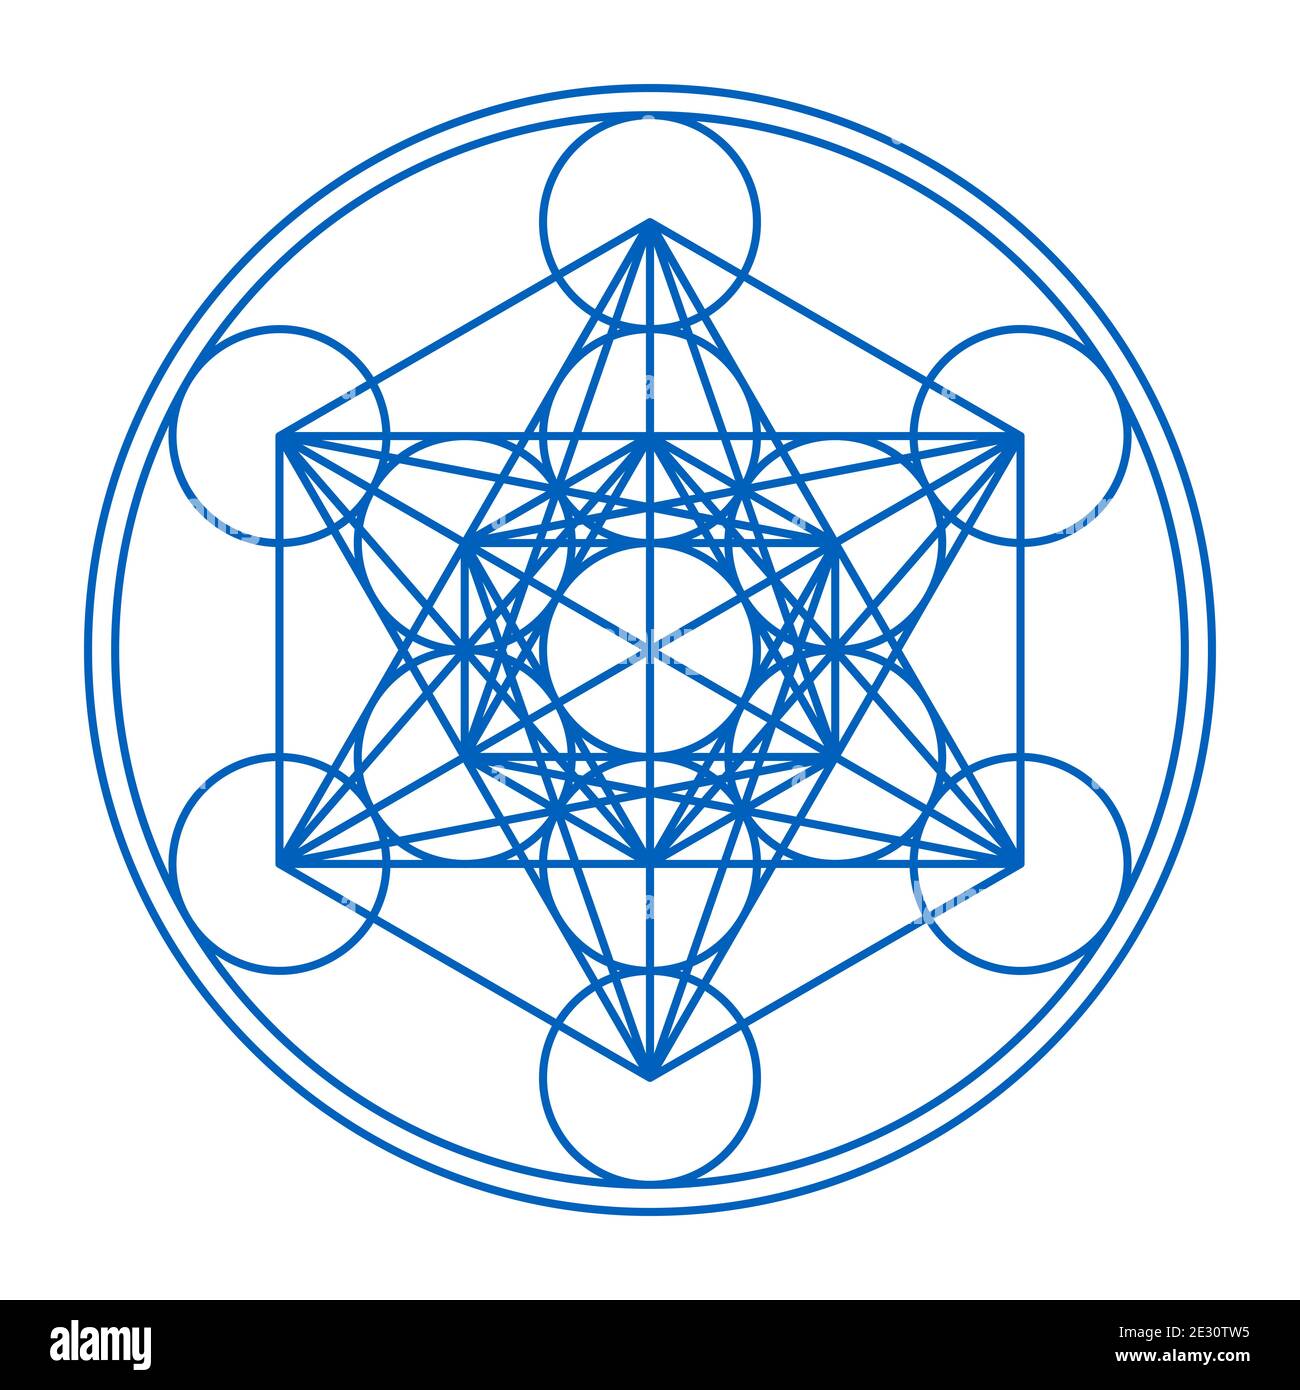 Cubo Metatron incorniciato in due cerchi. Simbolo mistico, derivato dal Fiore della vita. Tredici cerchi sono collegati con linee rette. Foto Stock